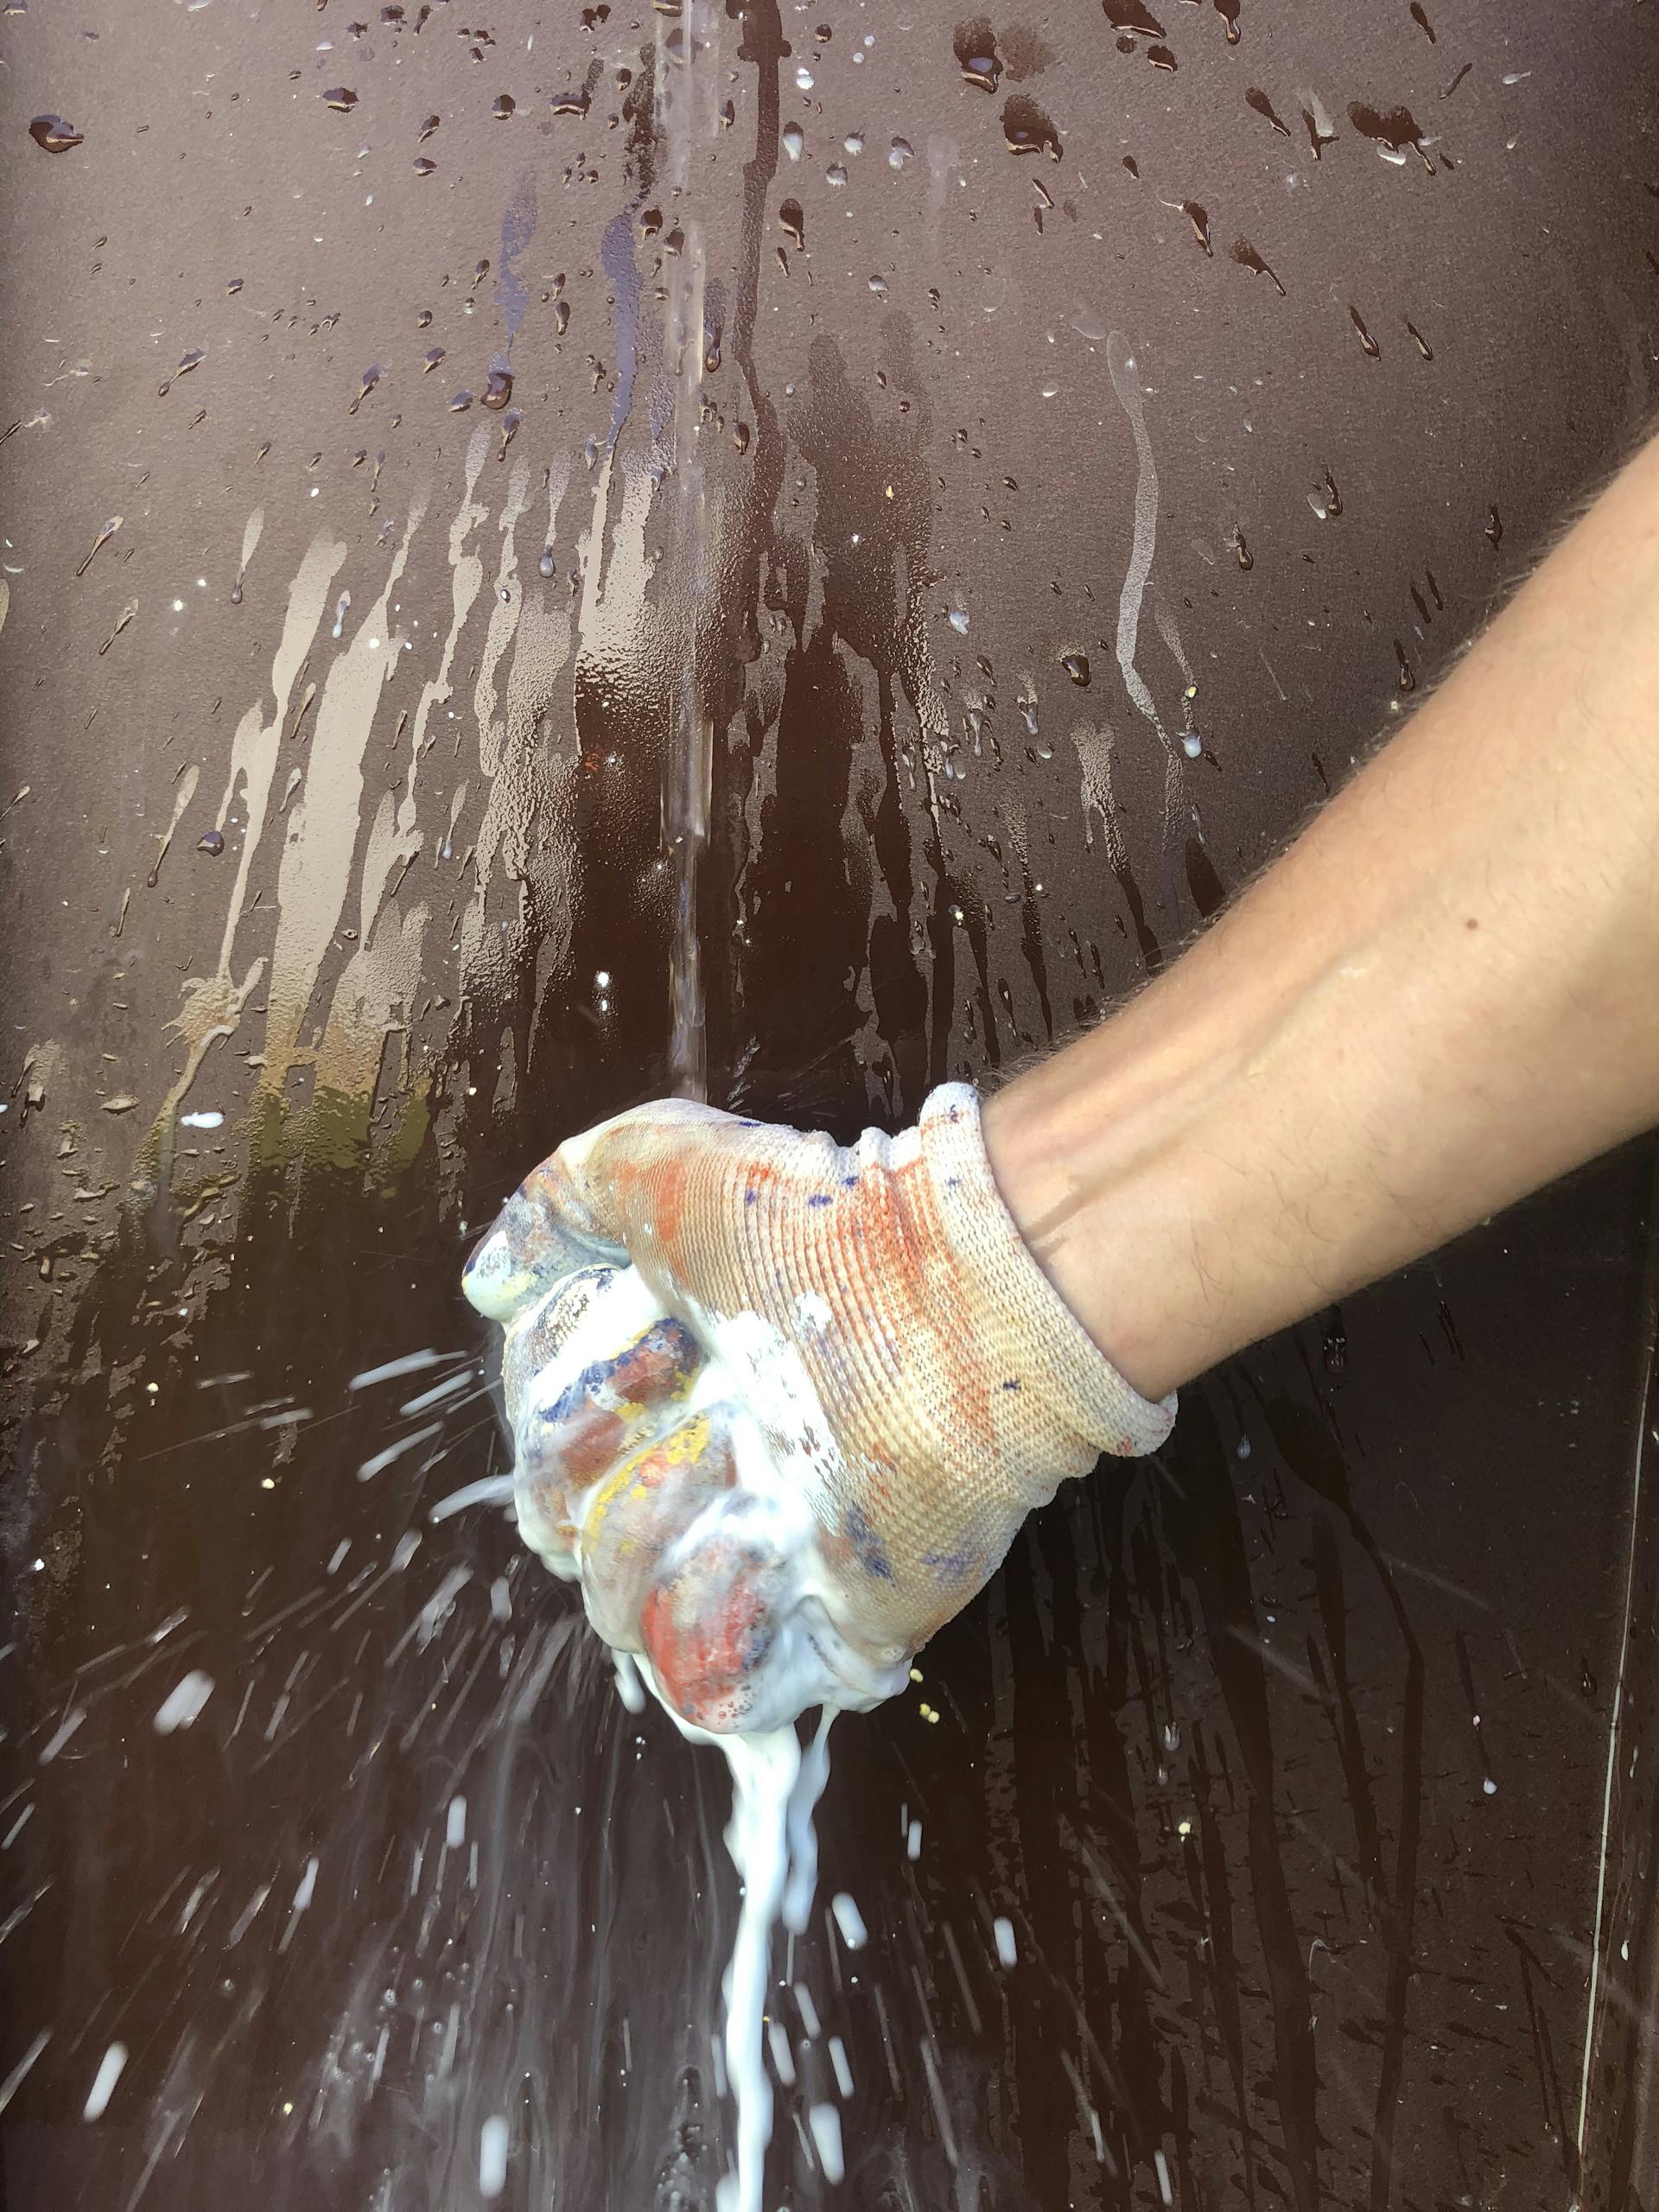 Une main compresse une éponge pour en extirper la peinture qu'elle vient d'appliquer.